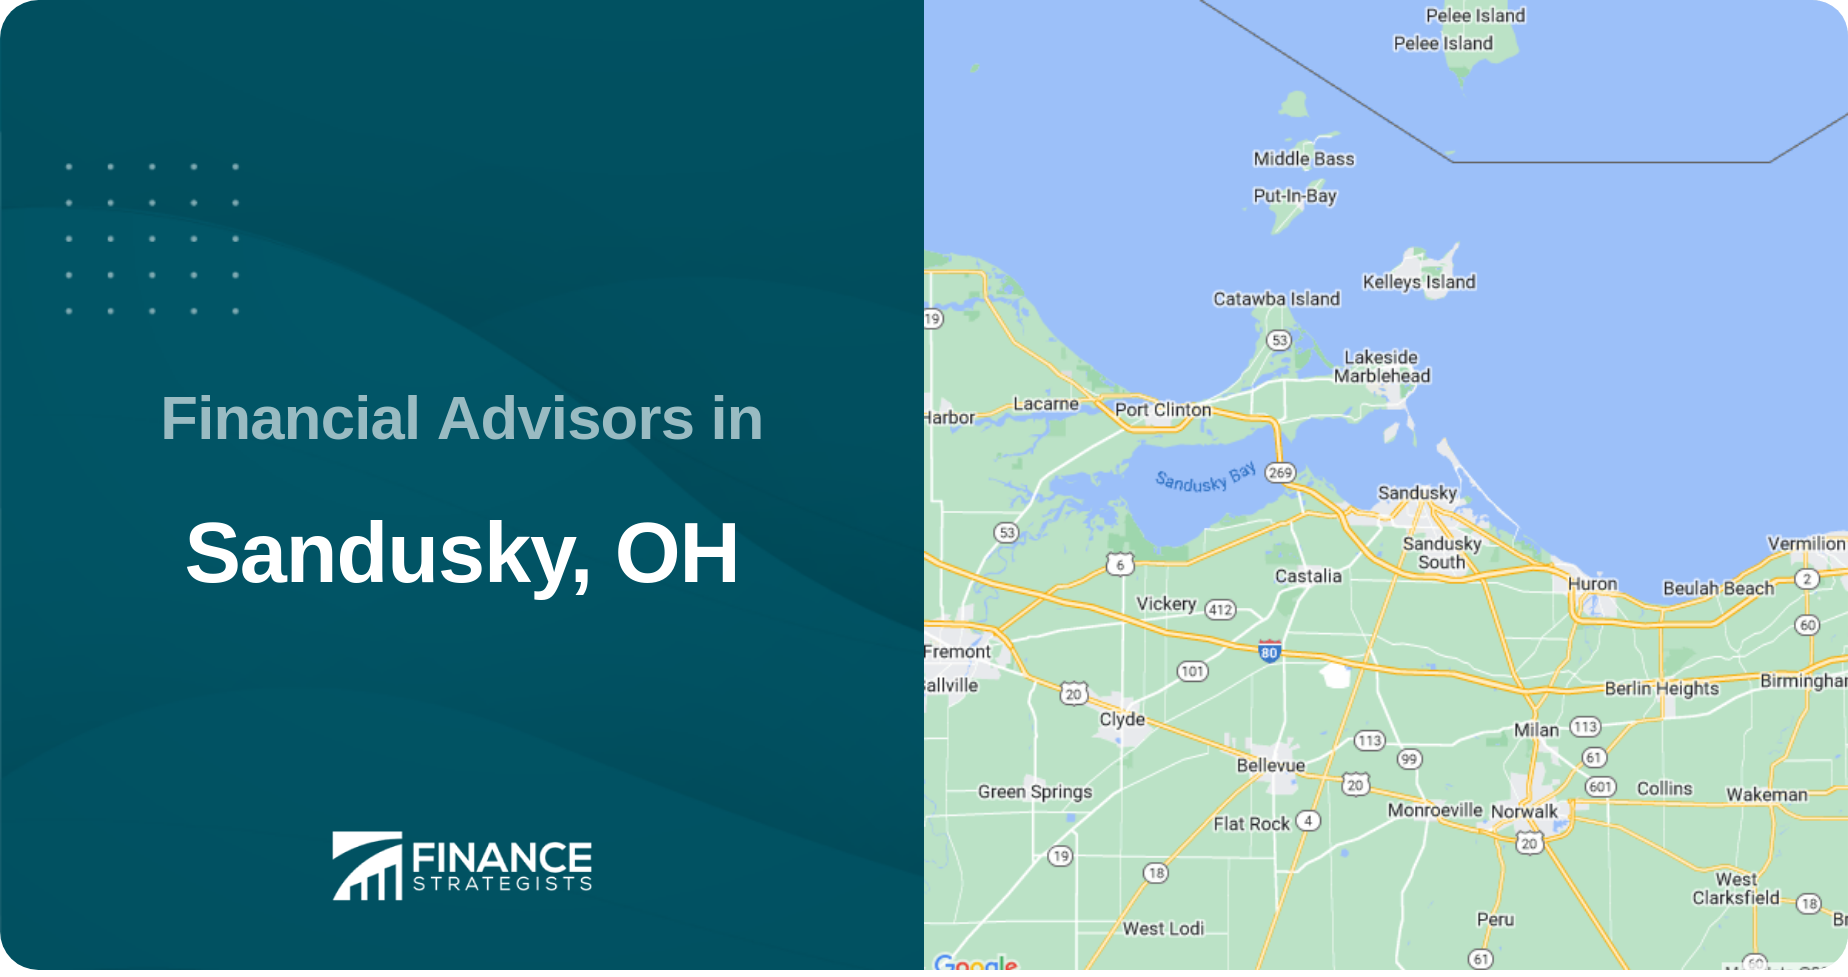 Financial Advisors in Sandusky, OH